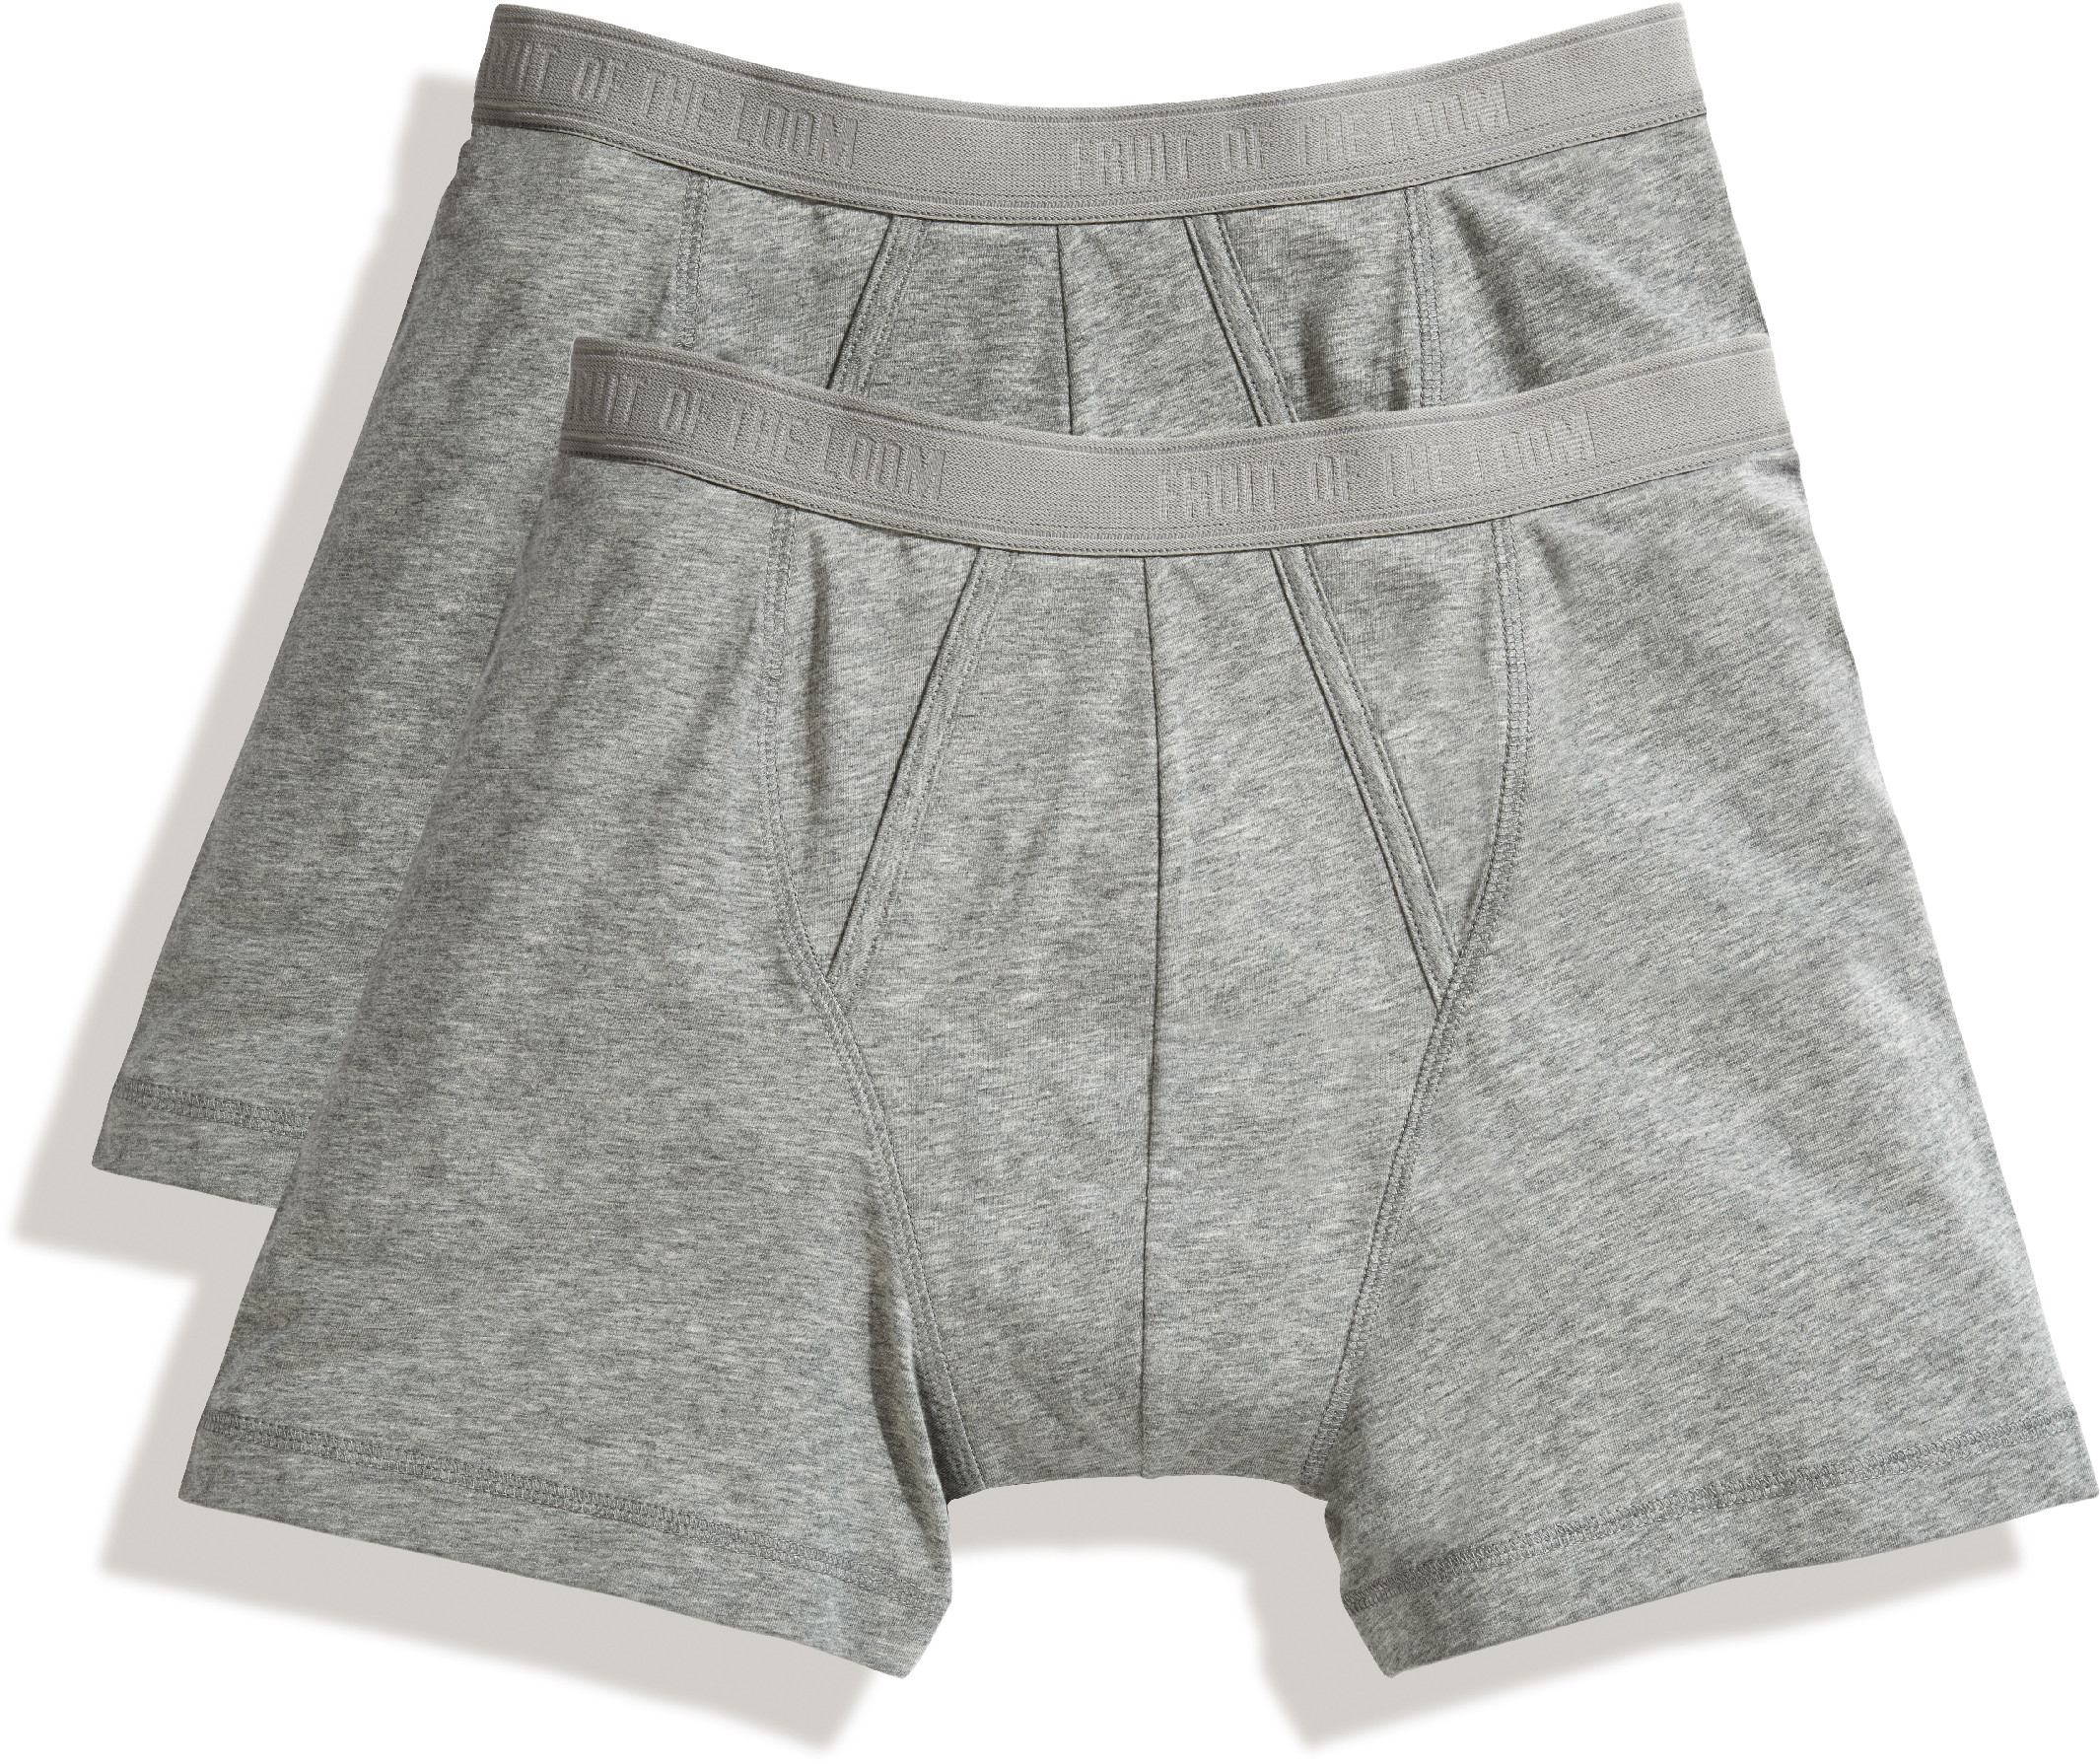 Pánské boxerky, balení po 2 ks Barva: light grey marl/light grey mar, Velikost: XL